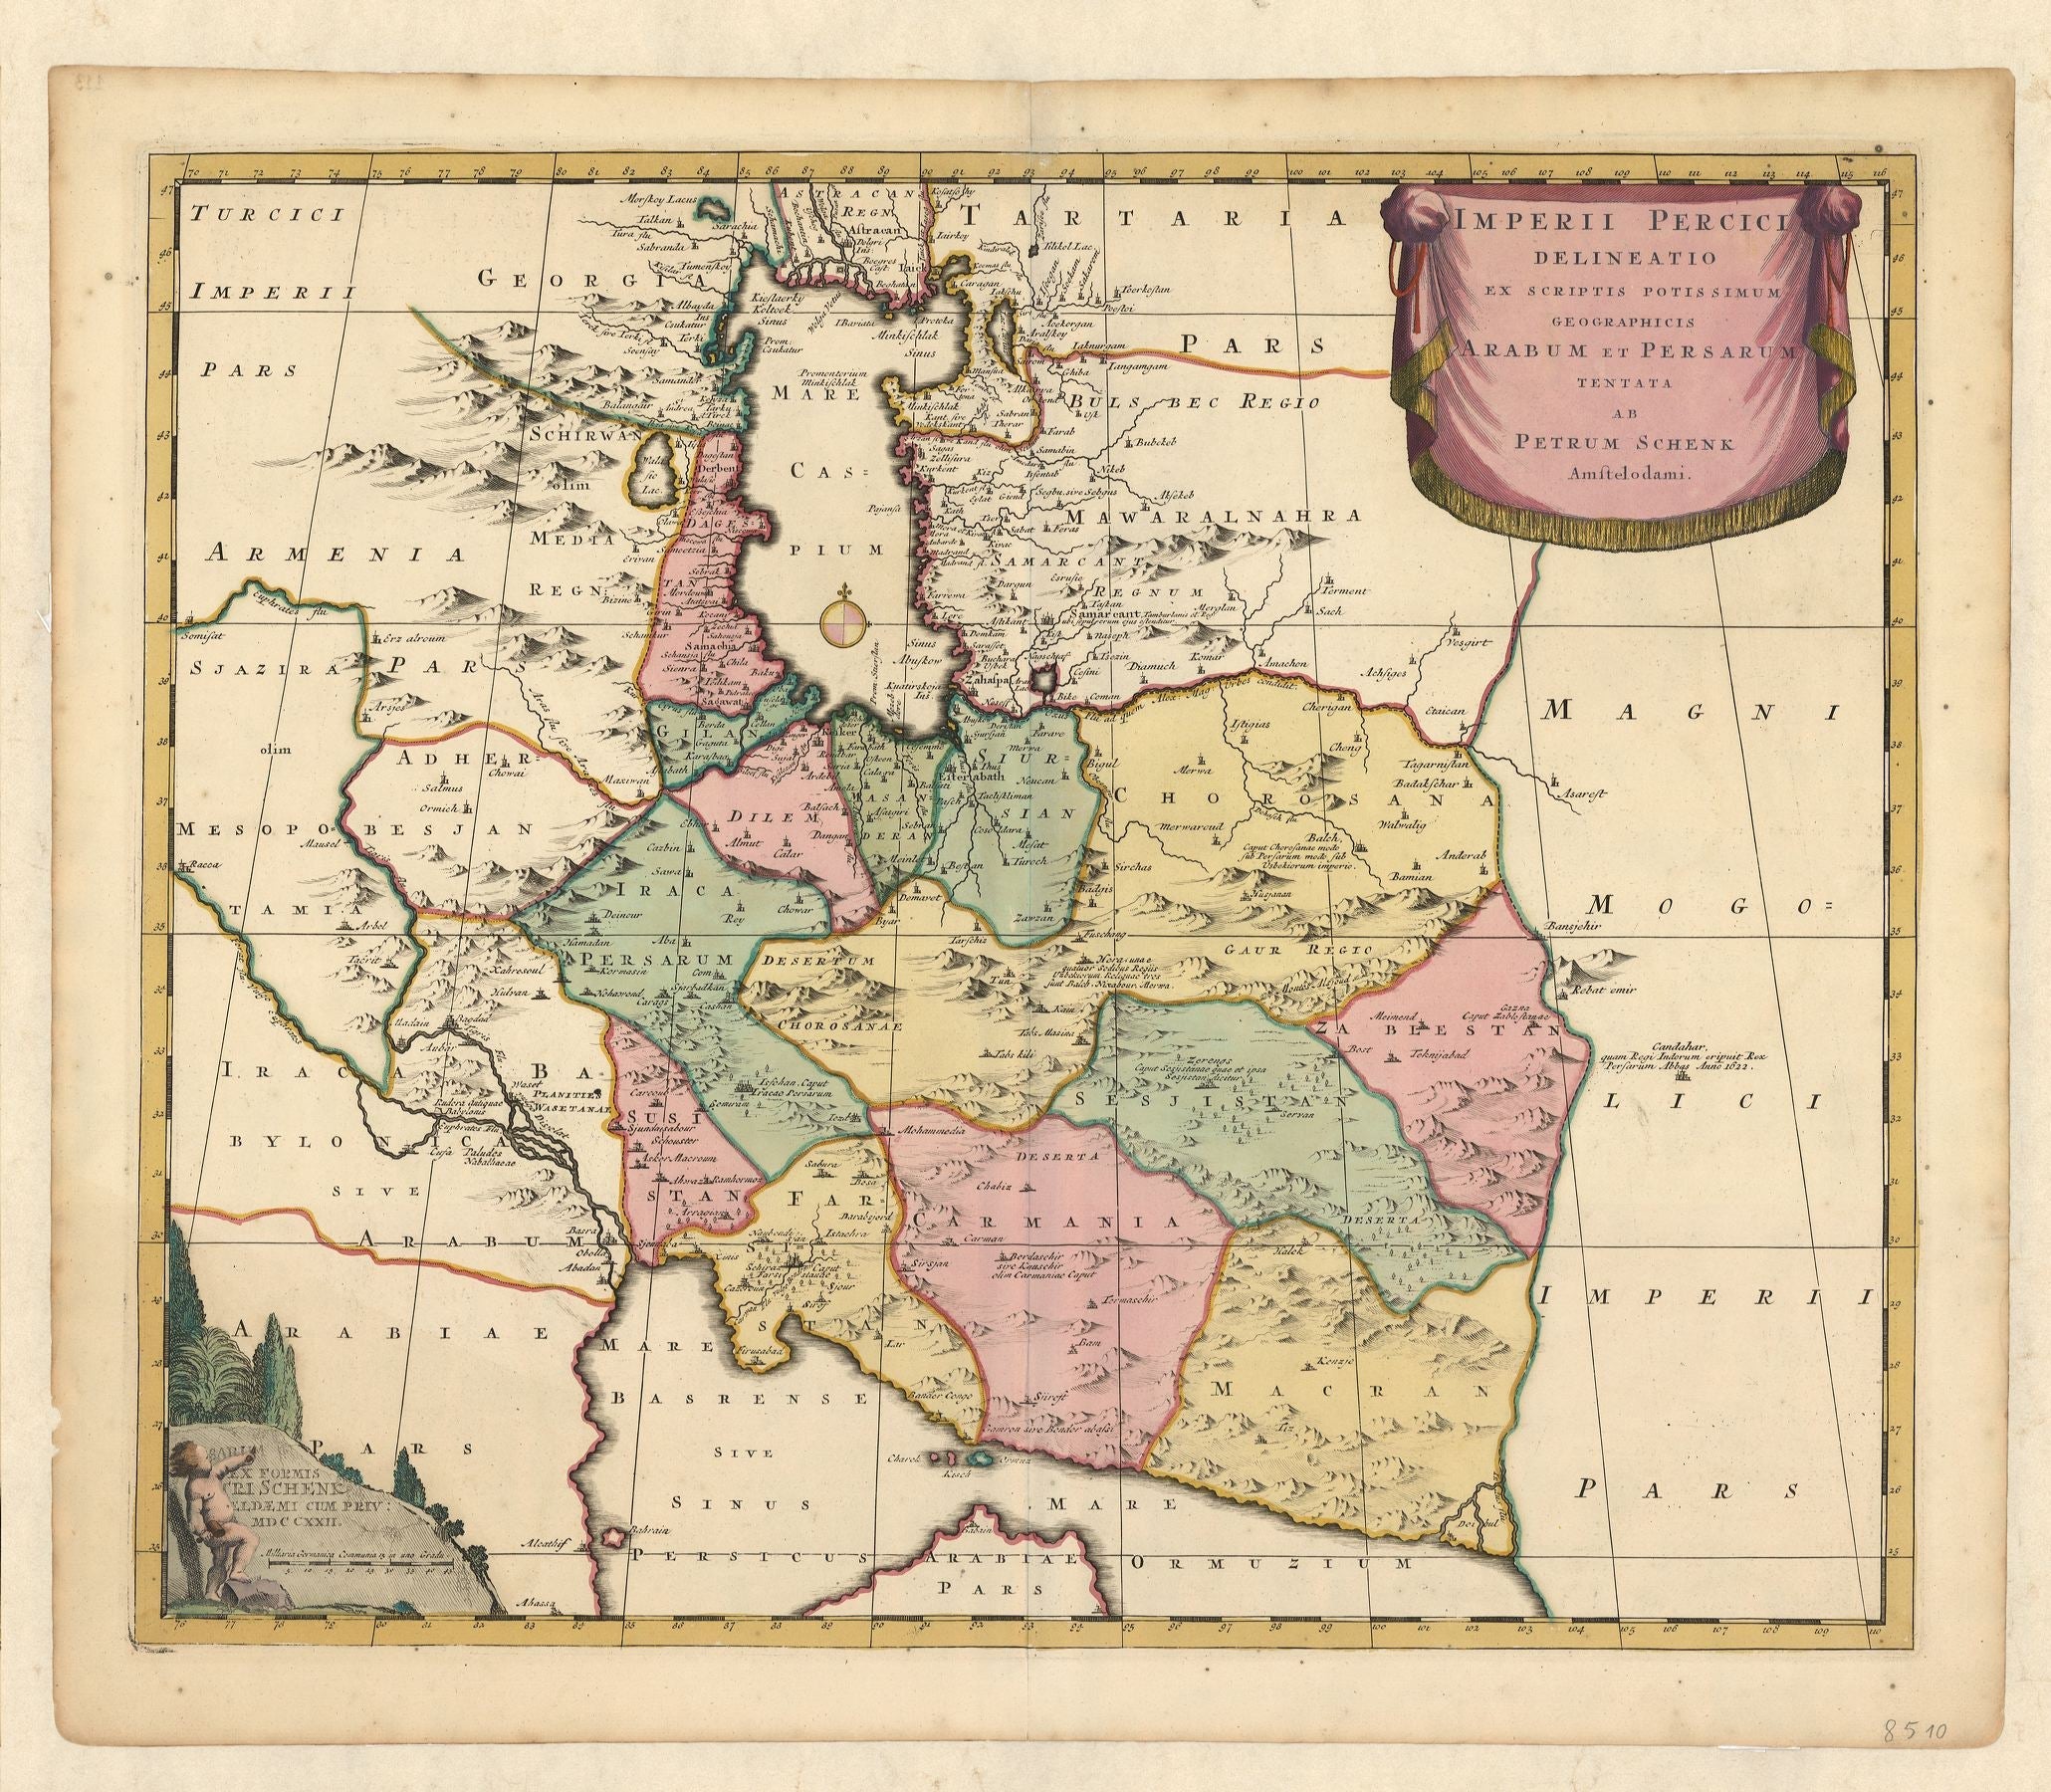 Das Persische Reich im Jahr 1722 von Petrus Schenk